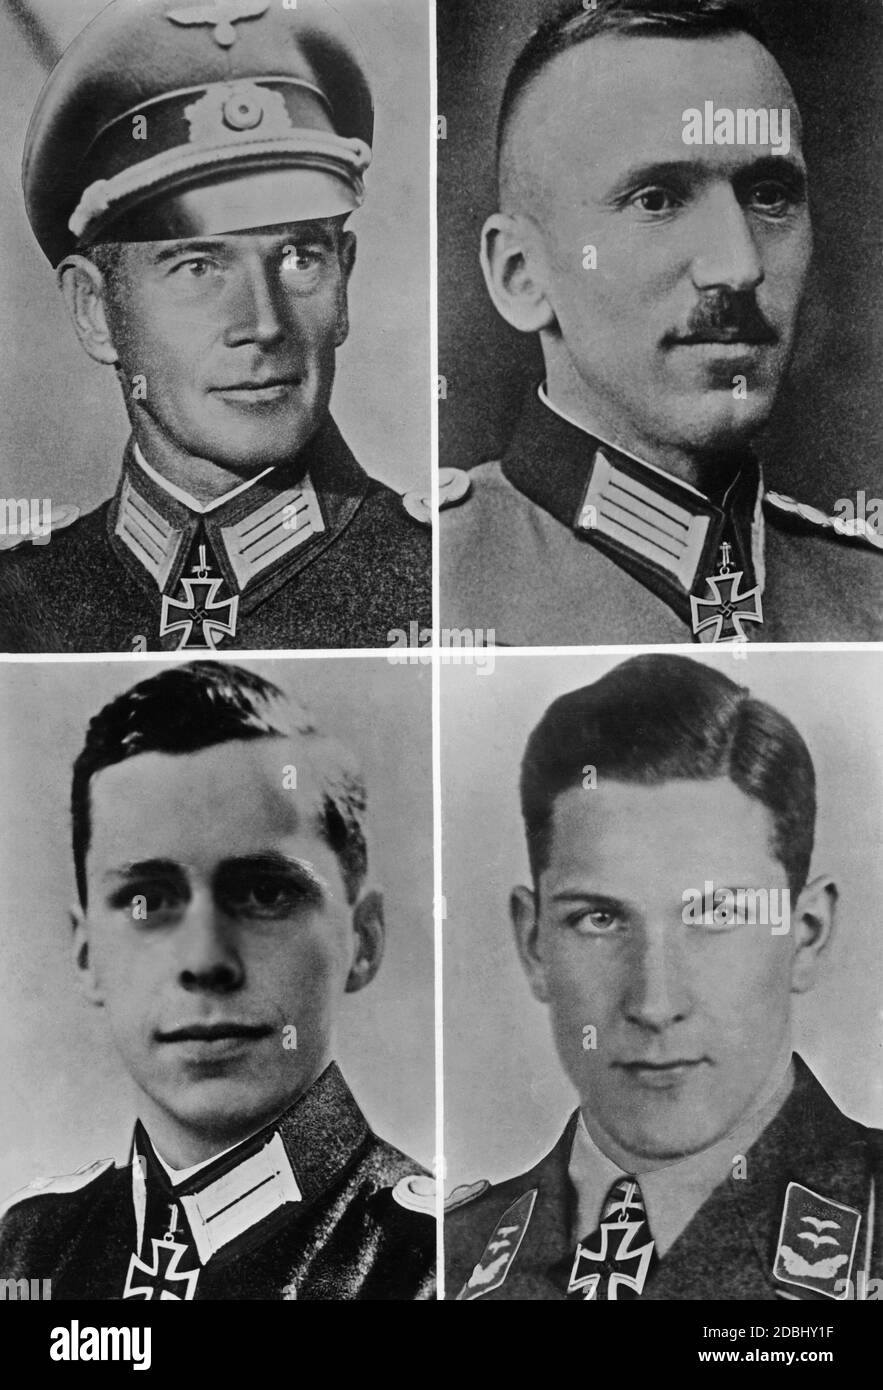 From top left to bottom right: Colonel Willibald Utz Gebirgsjaegerregiment 100, 21.05.1941, Lieutenant Colonel August Wittmann Gebirgsartillerieregiment 95, 21.06.1941, First Lieutenant Winrich Behr 3./Aufklaerungsabteilung 3, 15.05.1941, First Lieutenant Heinrich Eppen, 1./Stuka Geschwader 3, 05.07.1941, with the Knight's Cross. The date refers to the date of bestowal. Stock Photo